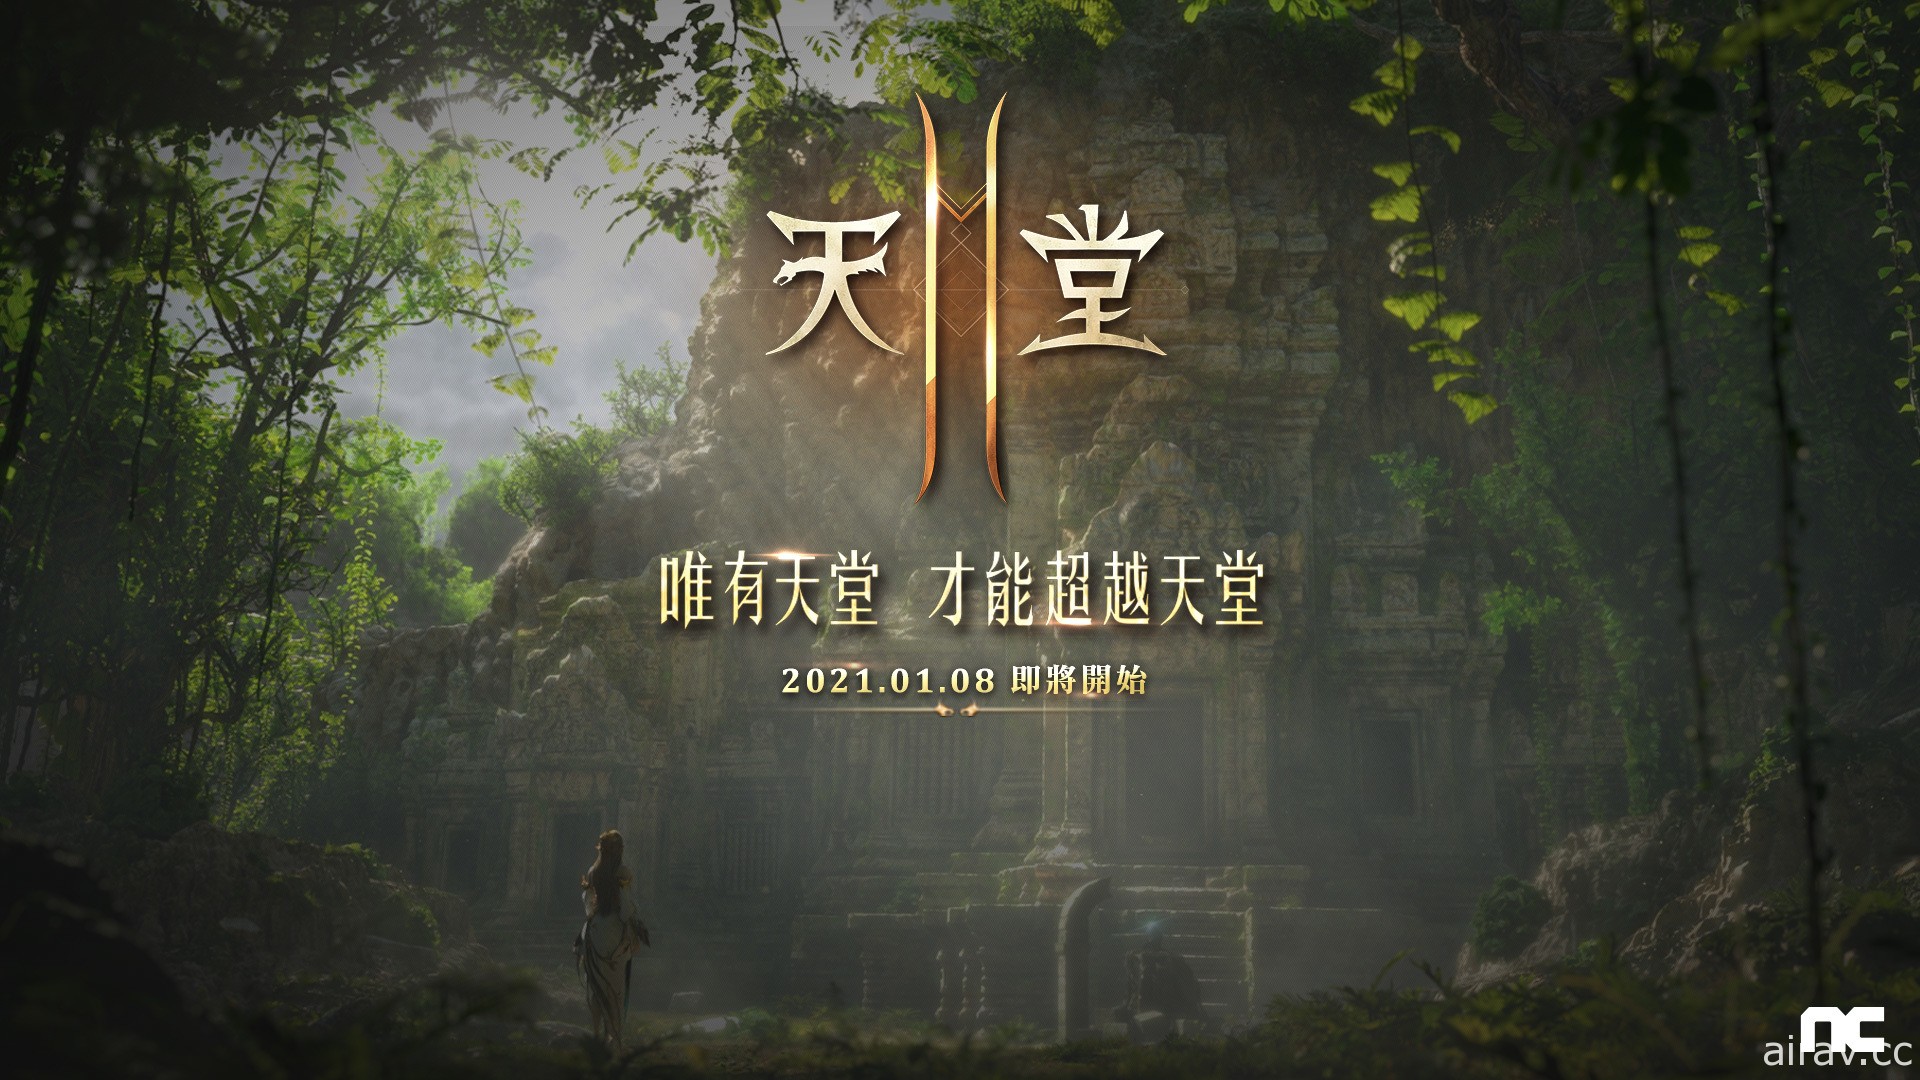 《天堂 2M》公開遊戲形象網站與宣傳影片 宣布 1 月 8 日開啟事前預約